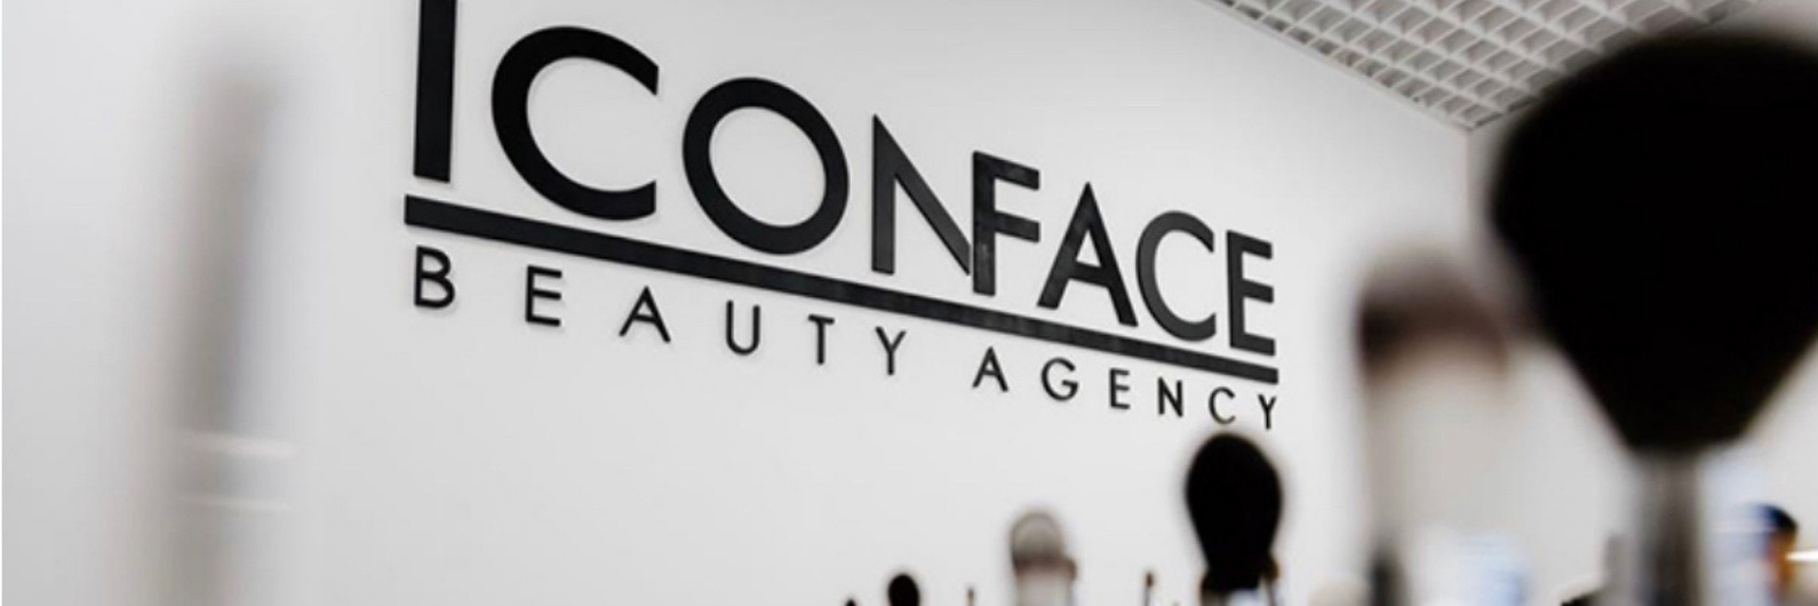 школа профессионального макияжа Iconface